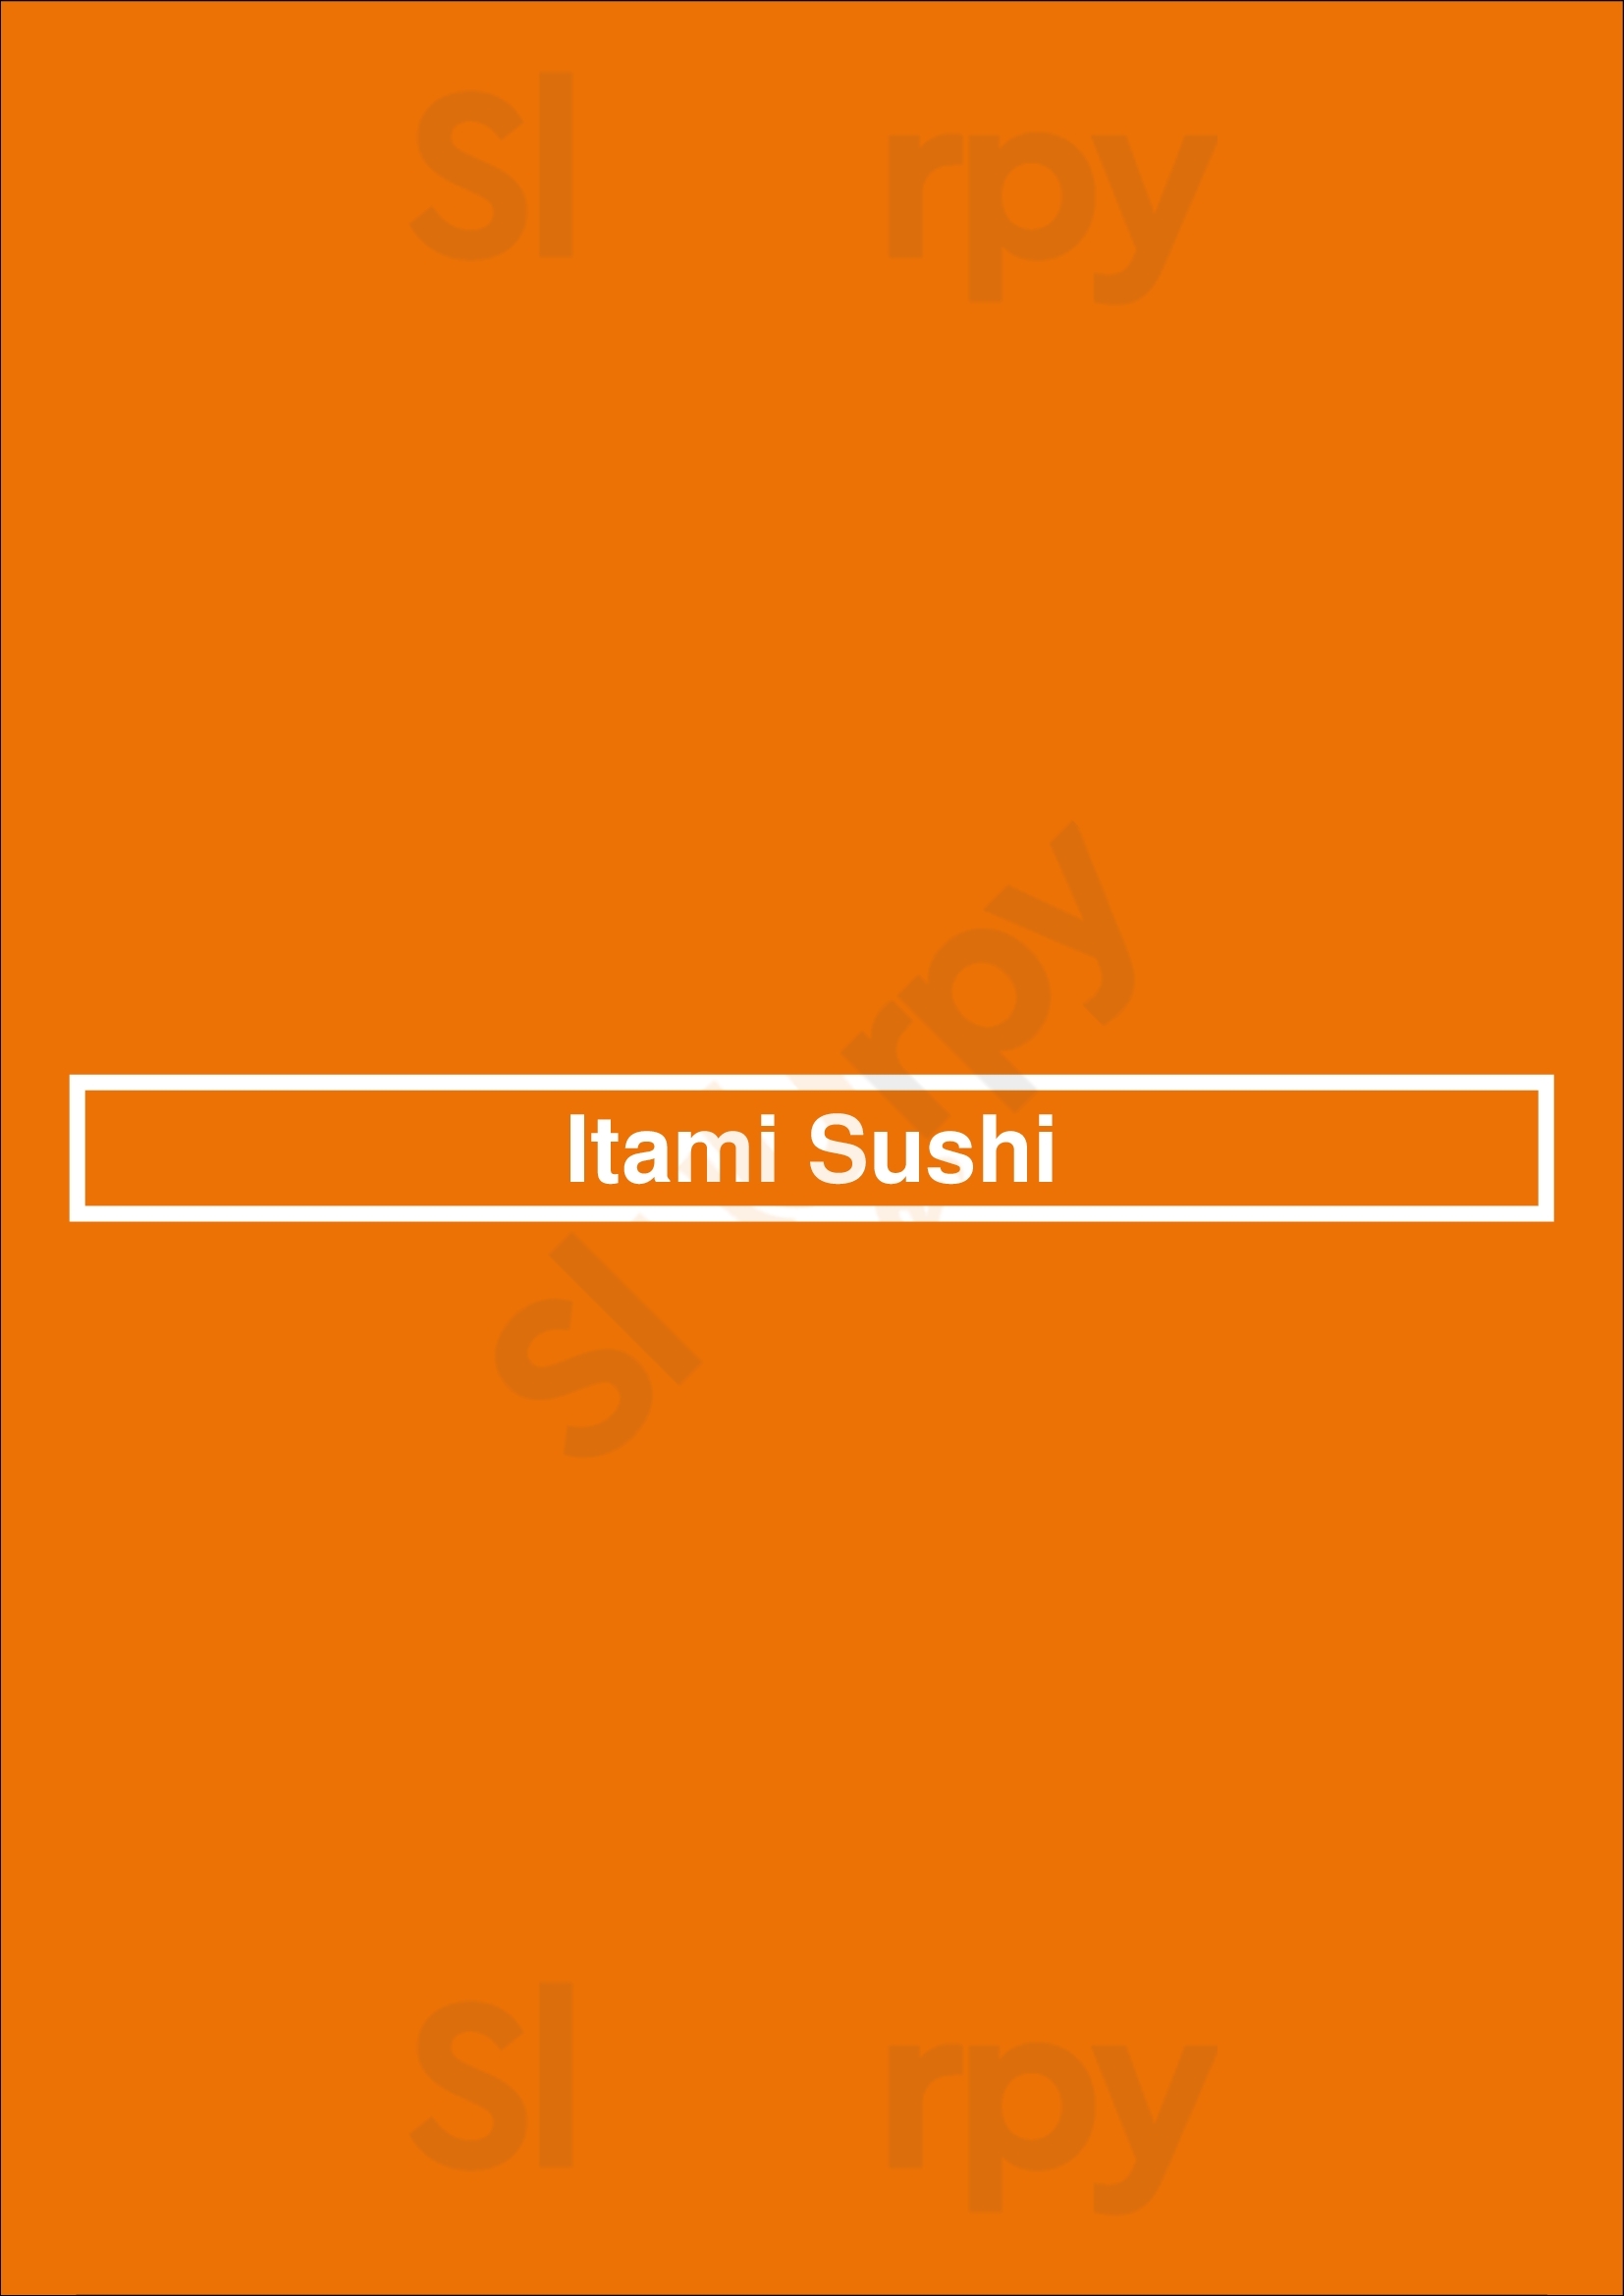 Itami Sushi Victoria Menu - 1